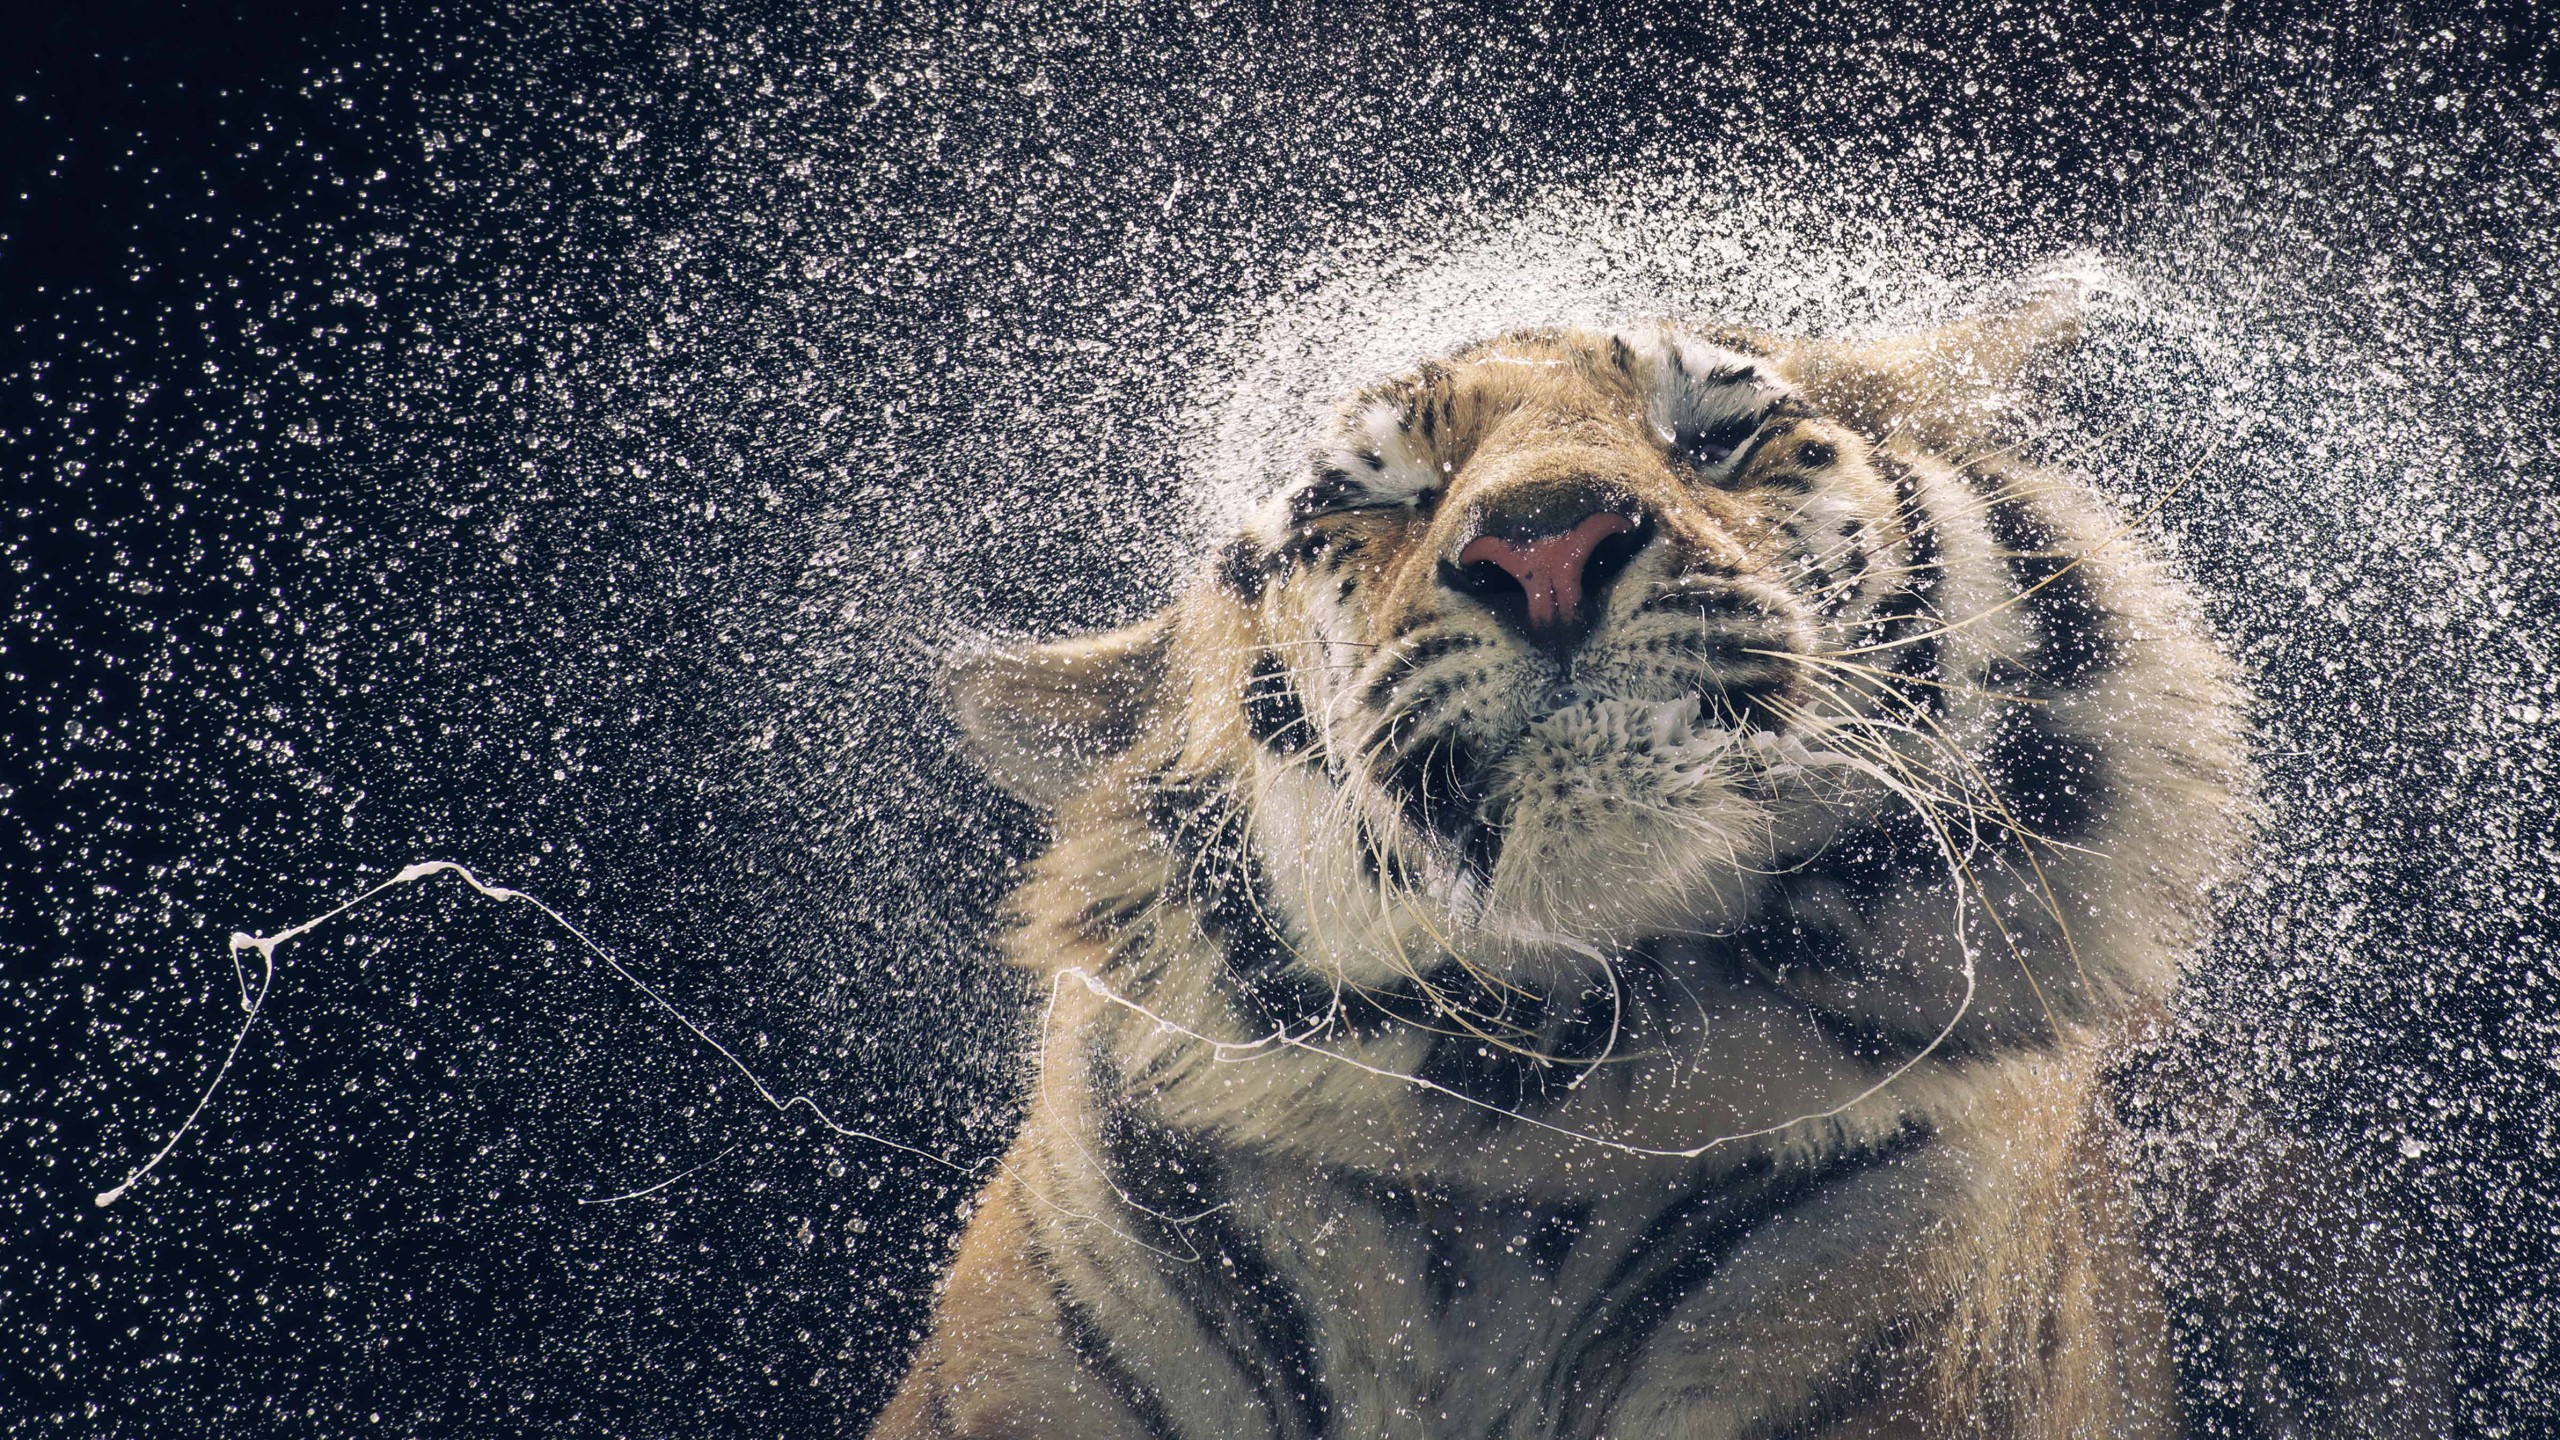 Không có gì đáng yêu hơn những chú hổ, đặc biệt nếu bạn thích những bức ảnh đầy tính chất hài hước và đáng yêu. Khám phá ngay bộ sưu tập về hình nền Tiger, drops, cute animals, funny, Animals #4481 để tìm ra bức ảnh ưng ý nhất.